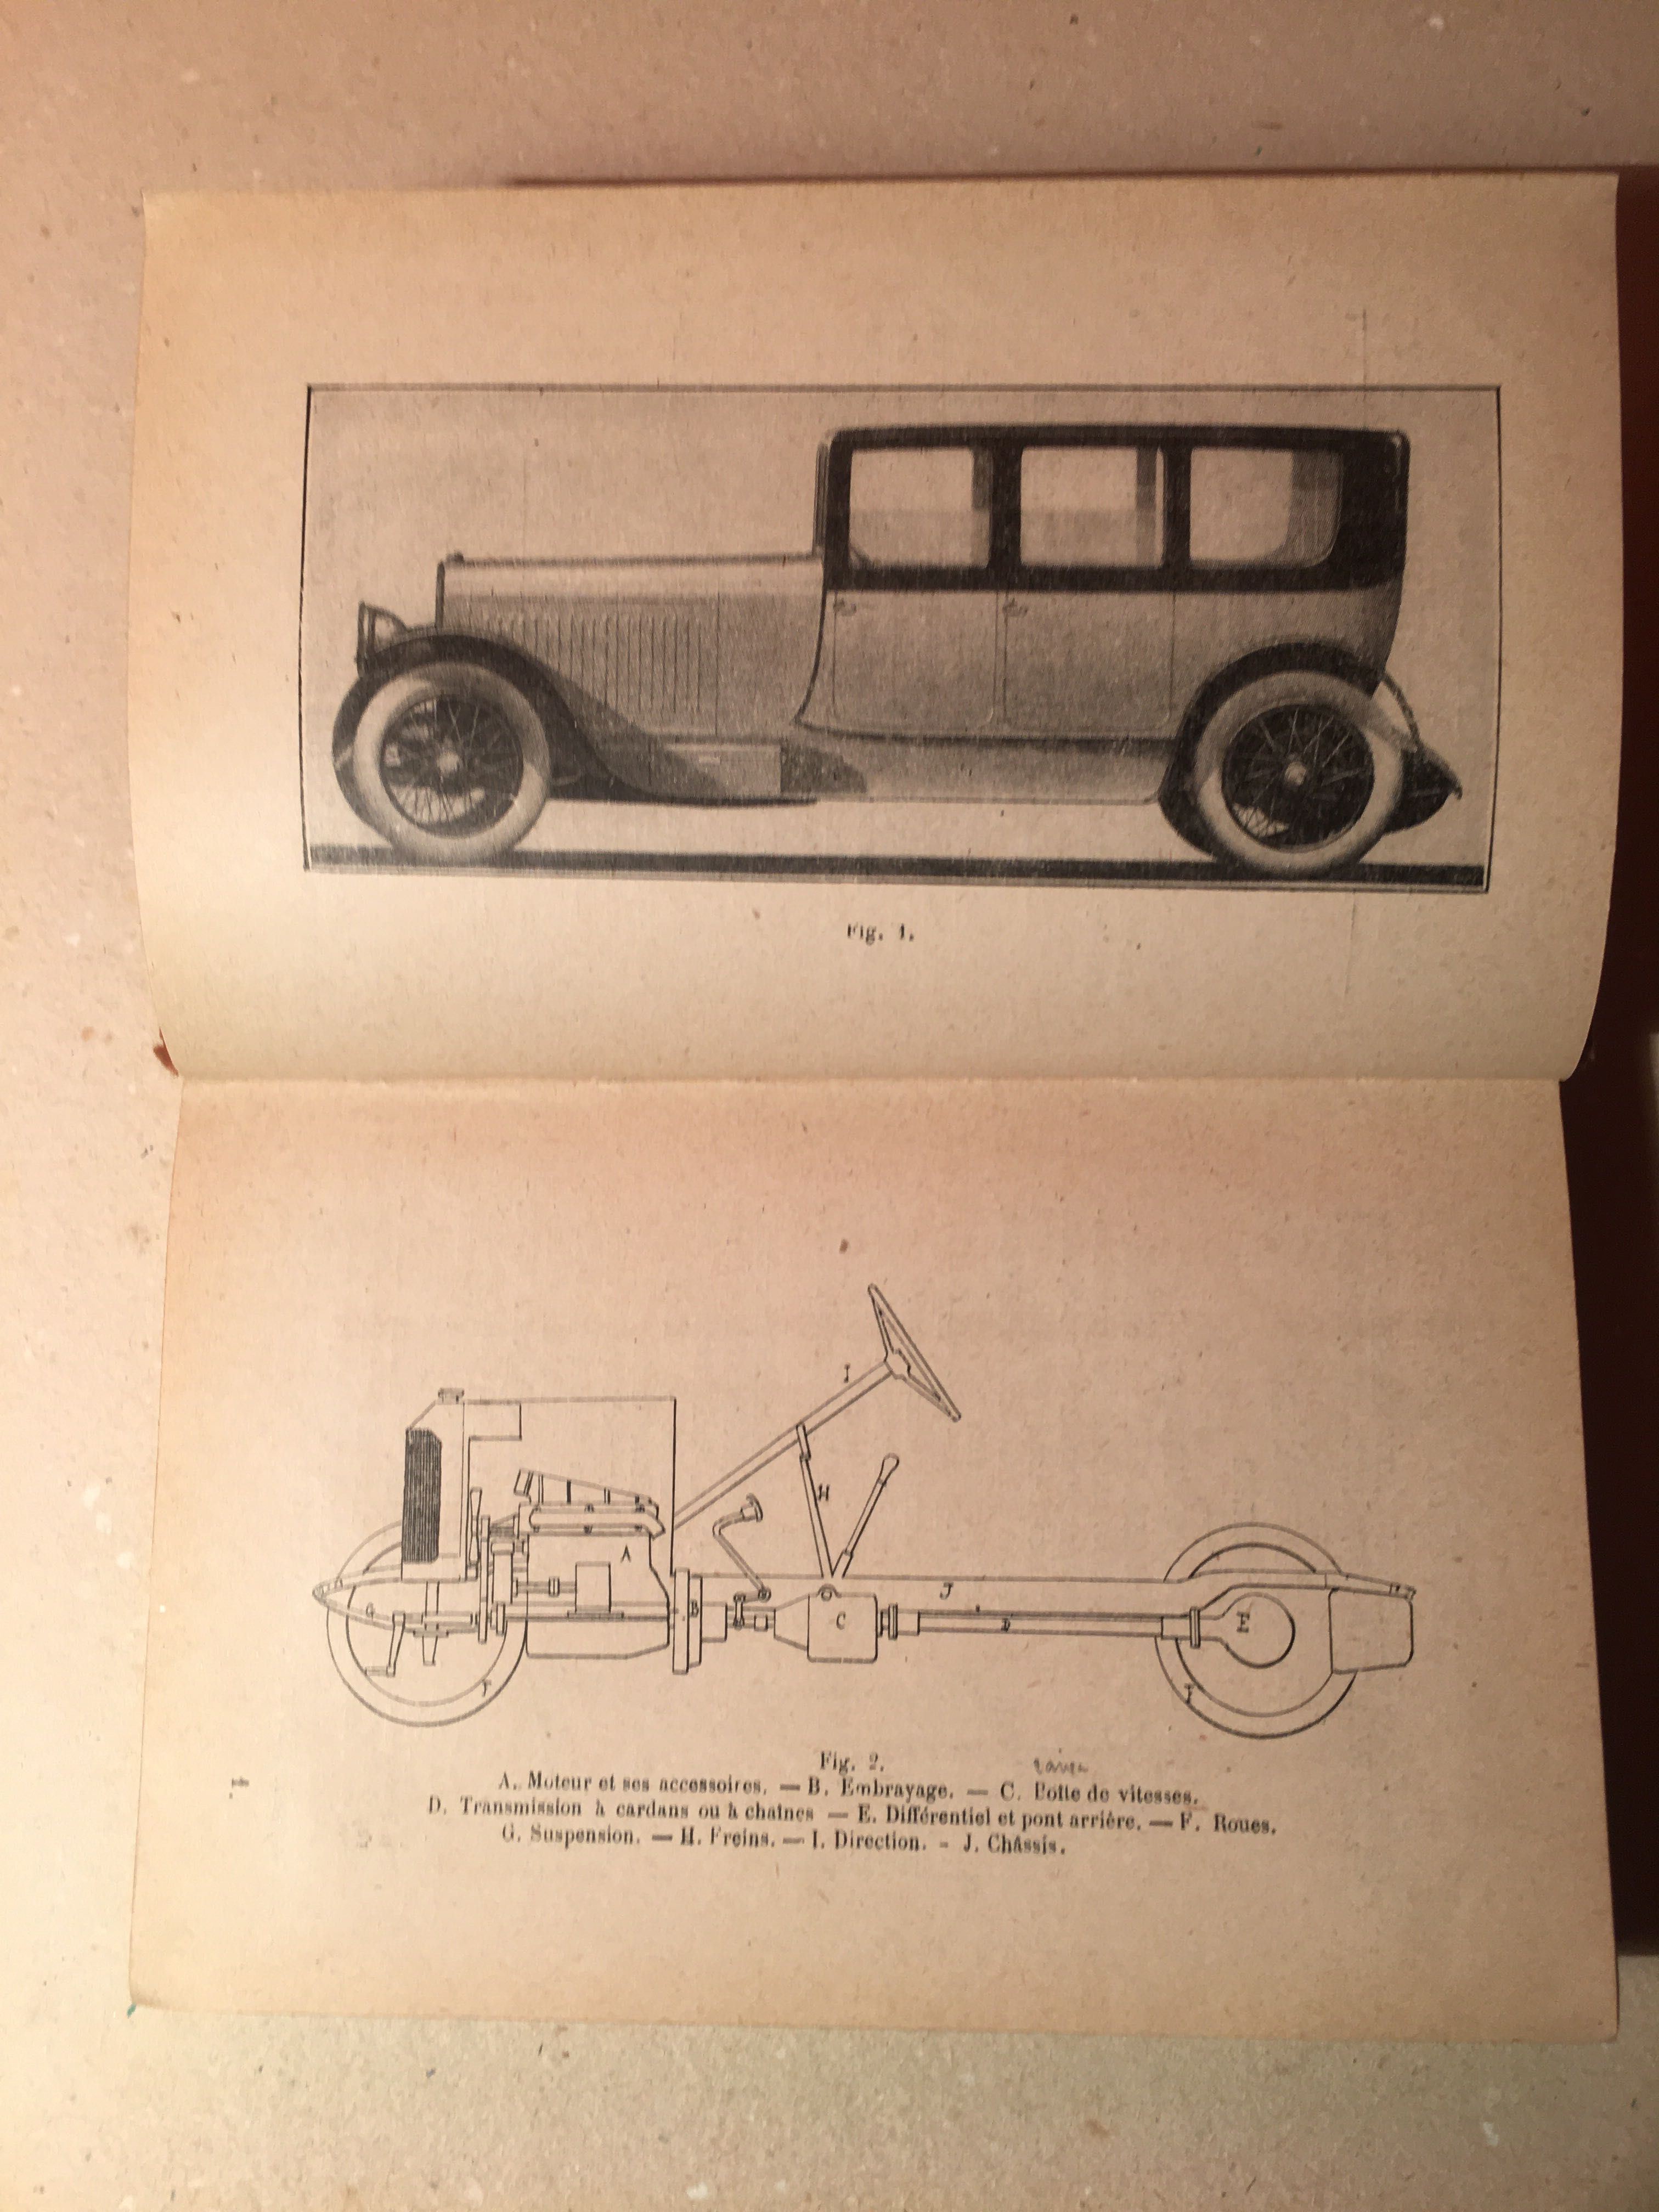 1922 - MANUEL du MÉCANICIEN - AUTOMOBILISTE Construction et Réparation